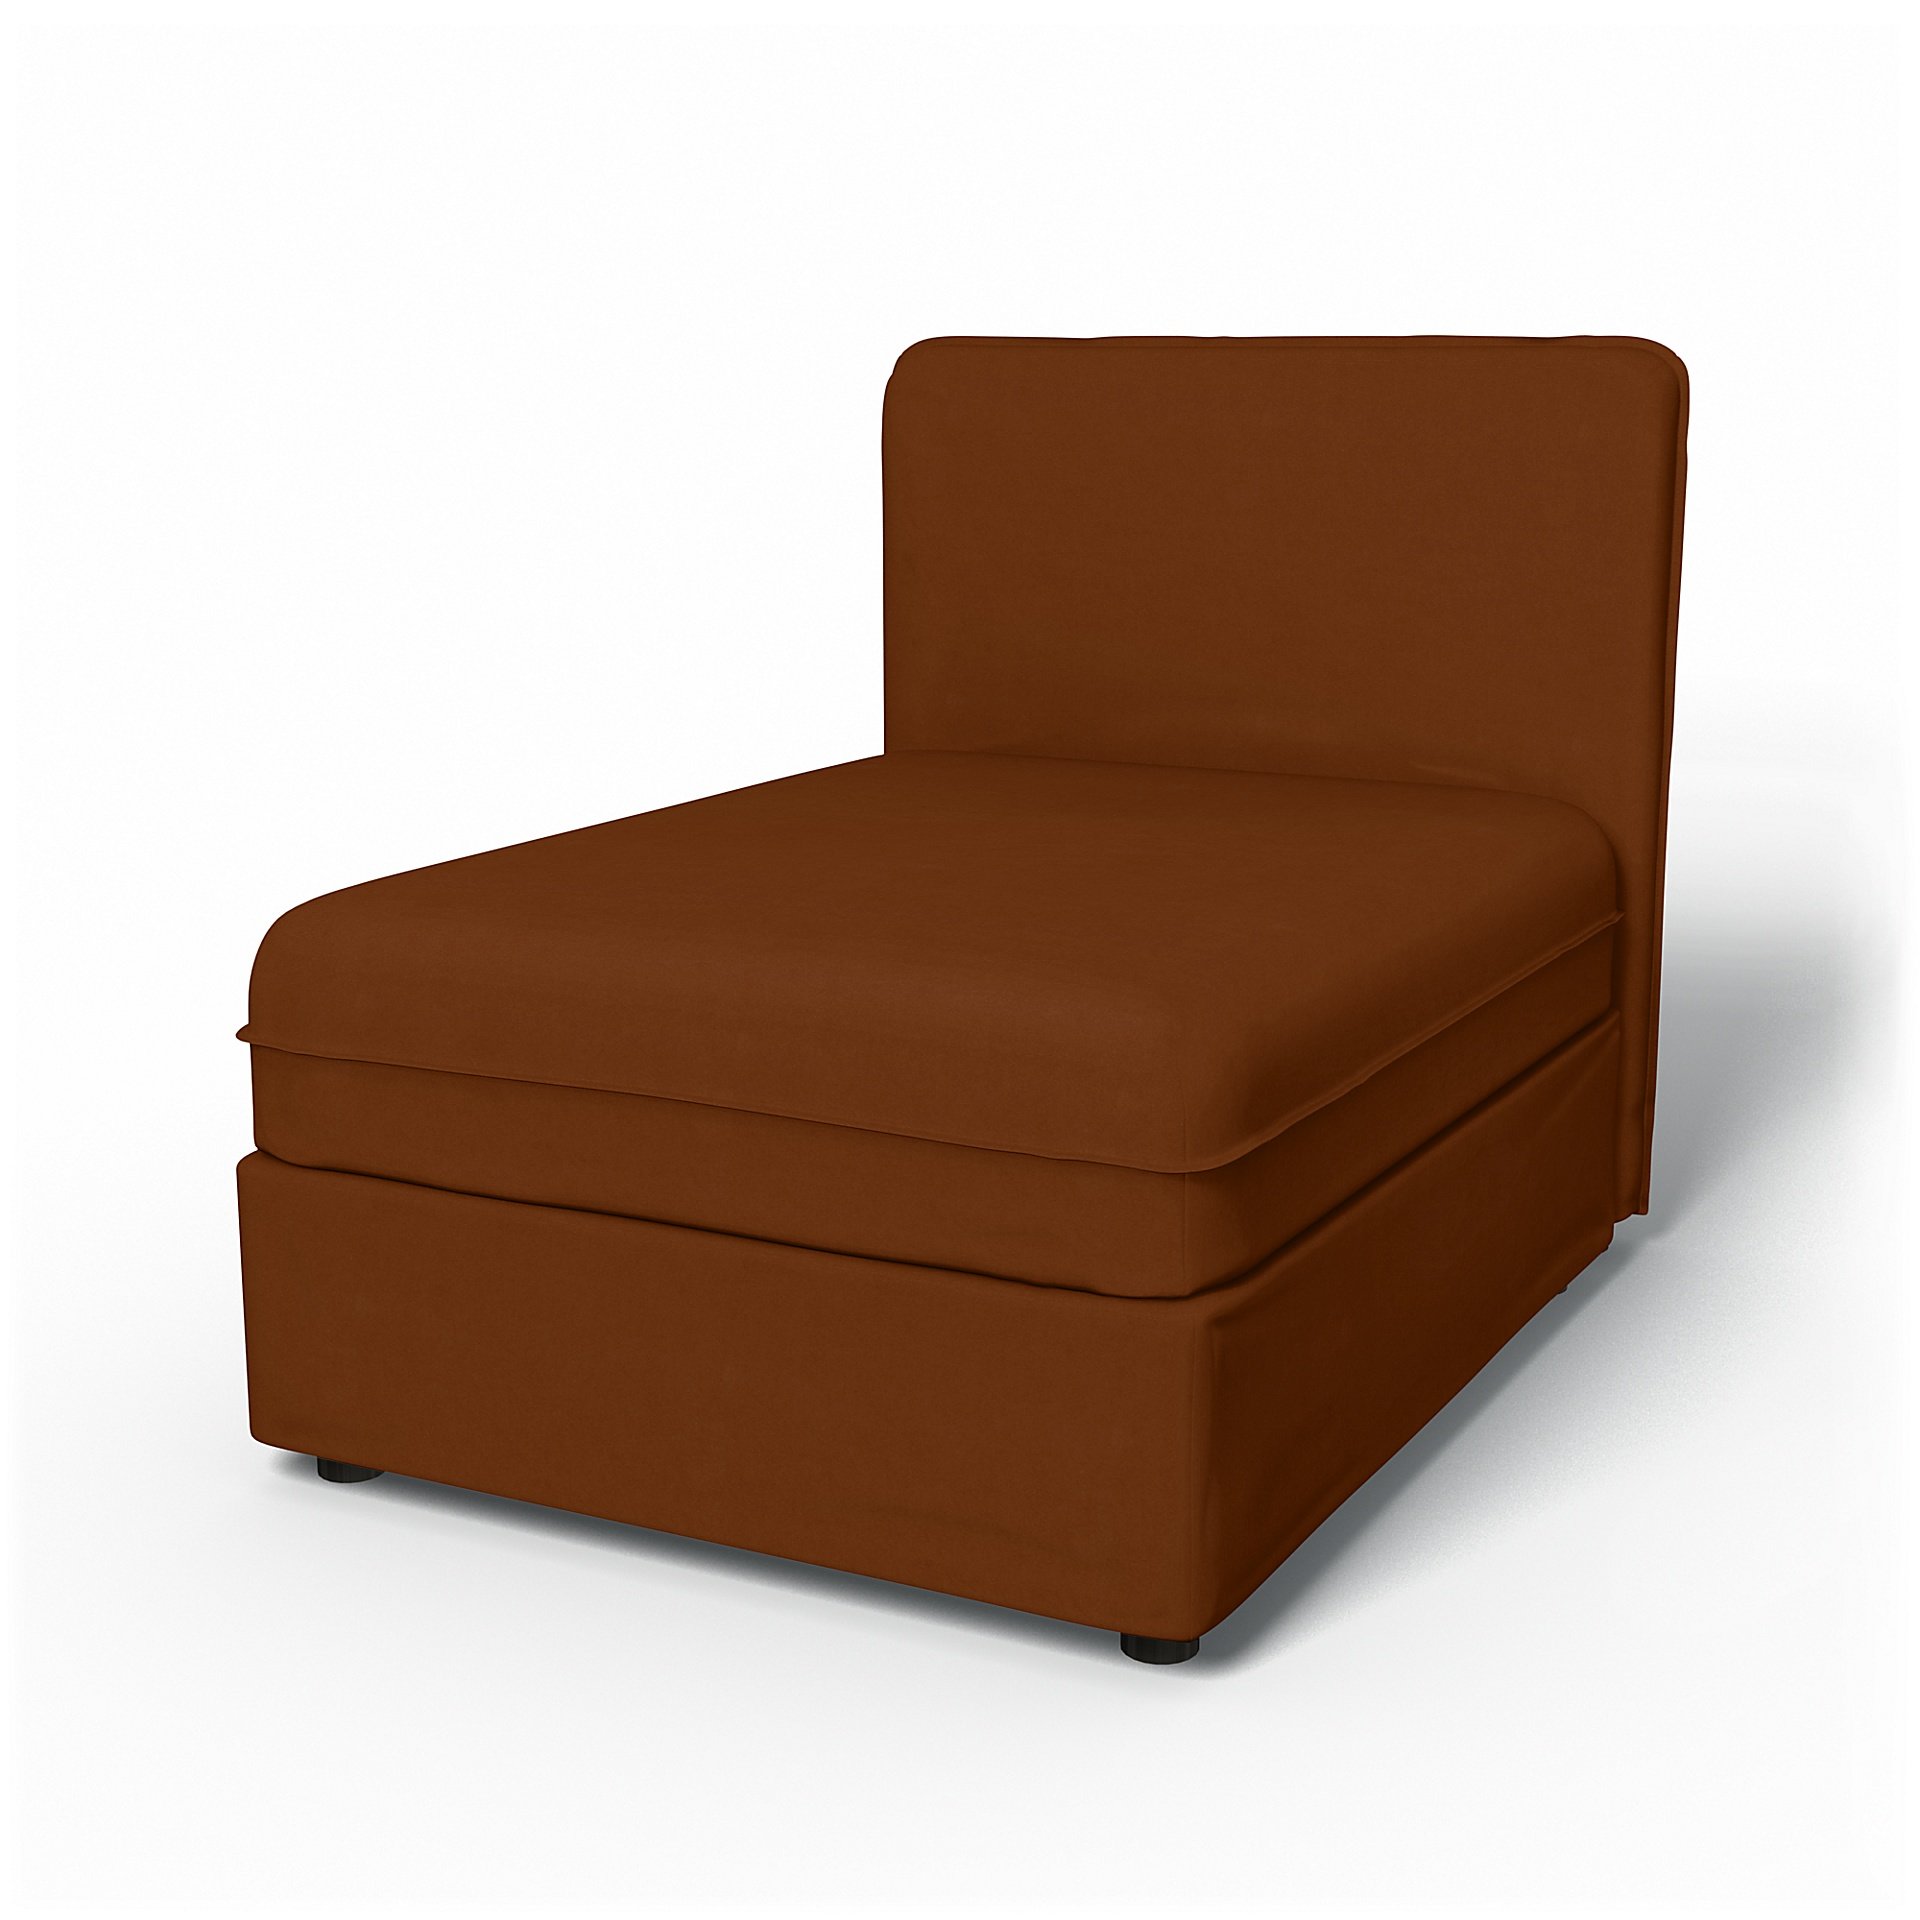 IKEA - Vallentuna Seat Module with Low Back Cover 80x100cm 32x39in, Cinnamon, Velvet - Bemz